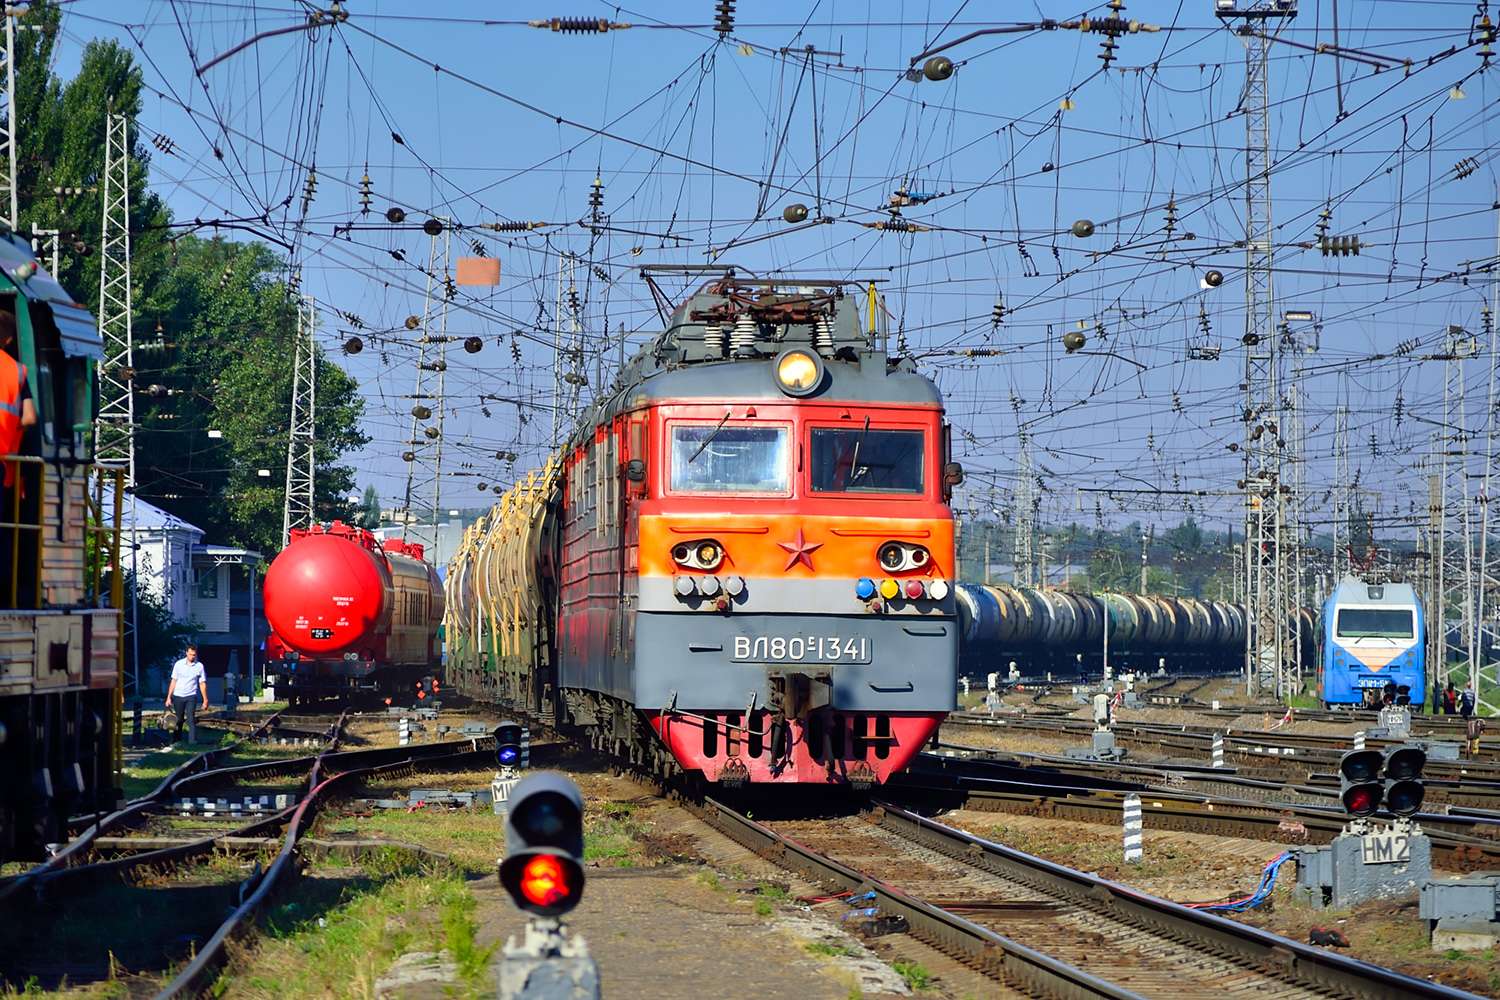 elektrická lokomotiva vl 80s-1341 puzzle online z fotografie